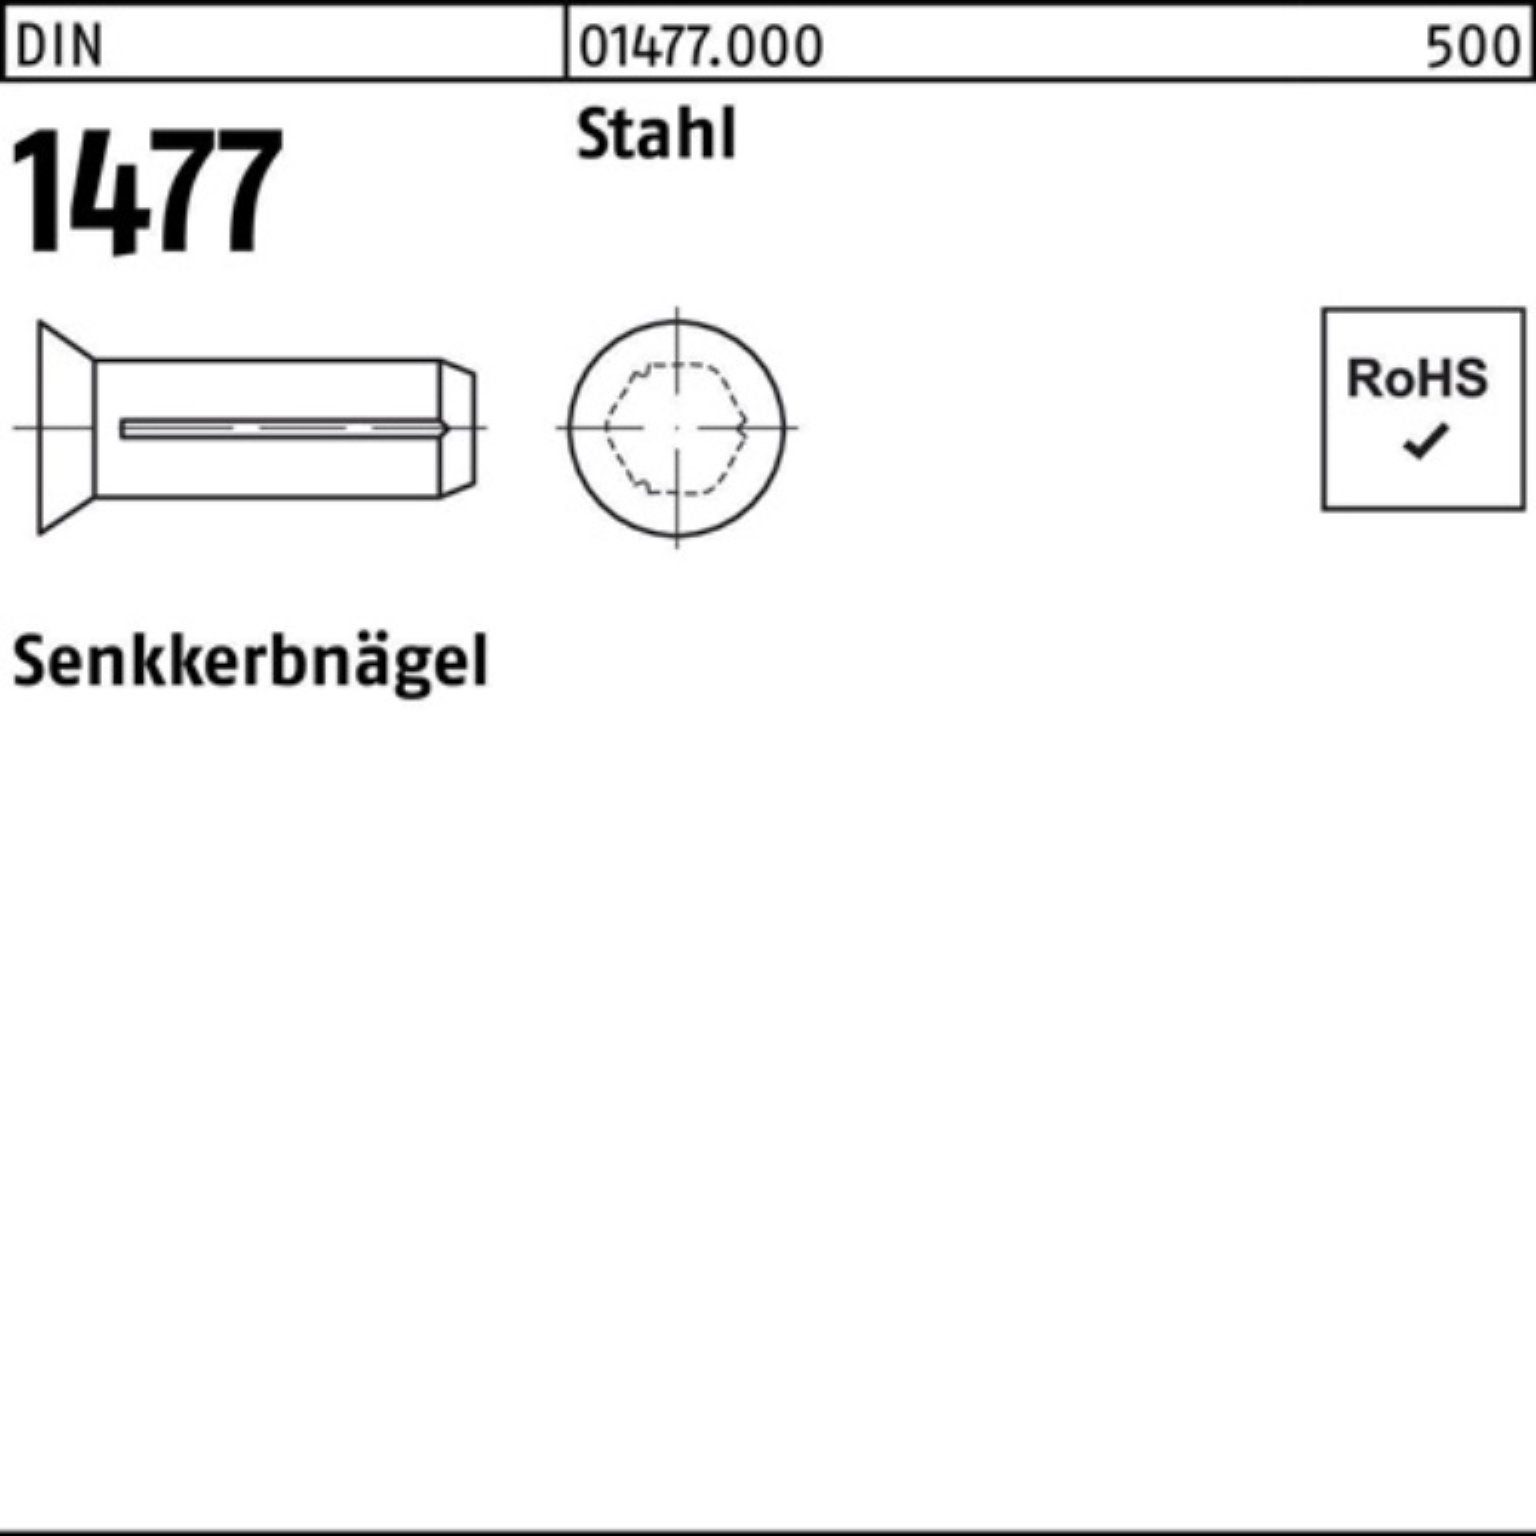 1477 Stahl 1477 250 Reyher 5x Senkkerbnagel Pack DIN Stück DIN Stah Nagel 250er 10